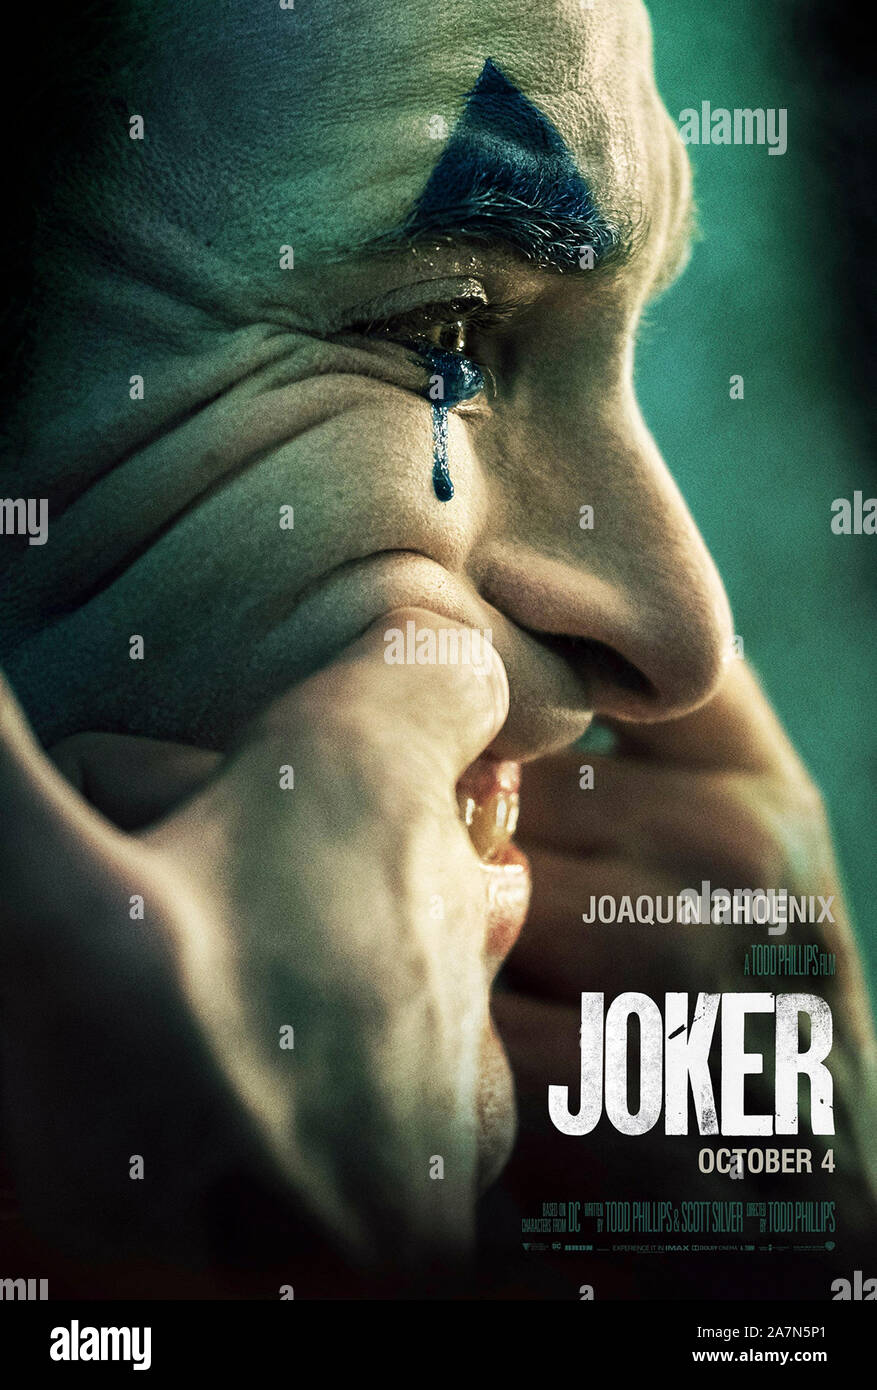 Joker (2019), dirigida por Todd Phillips y protagonizada por Joaquin Phoenix, Zazie Beetz y Robert De Niro. Spin off de la película sobre un cómico que se vuelve loco y se convierte en un psicópata. Foto de stock